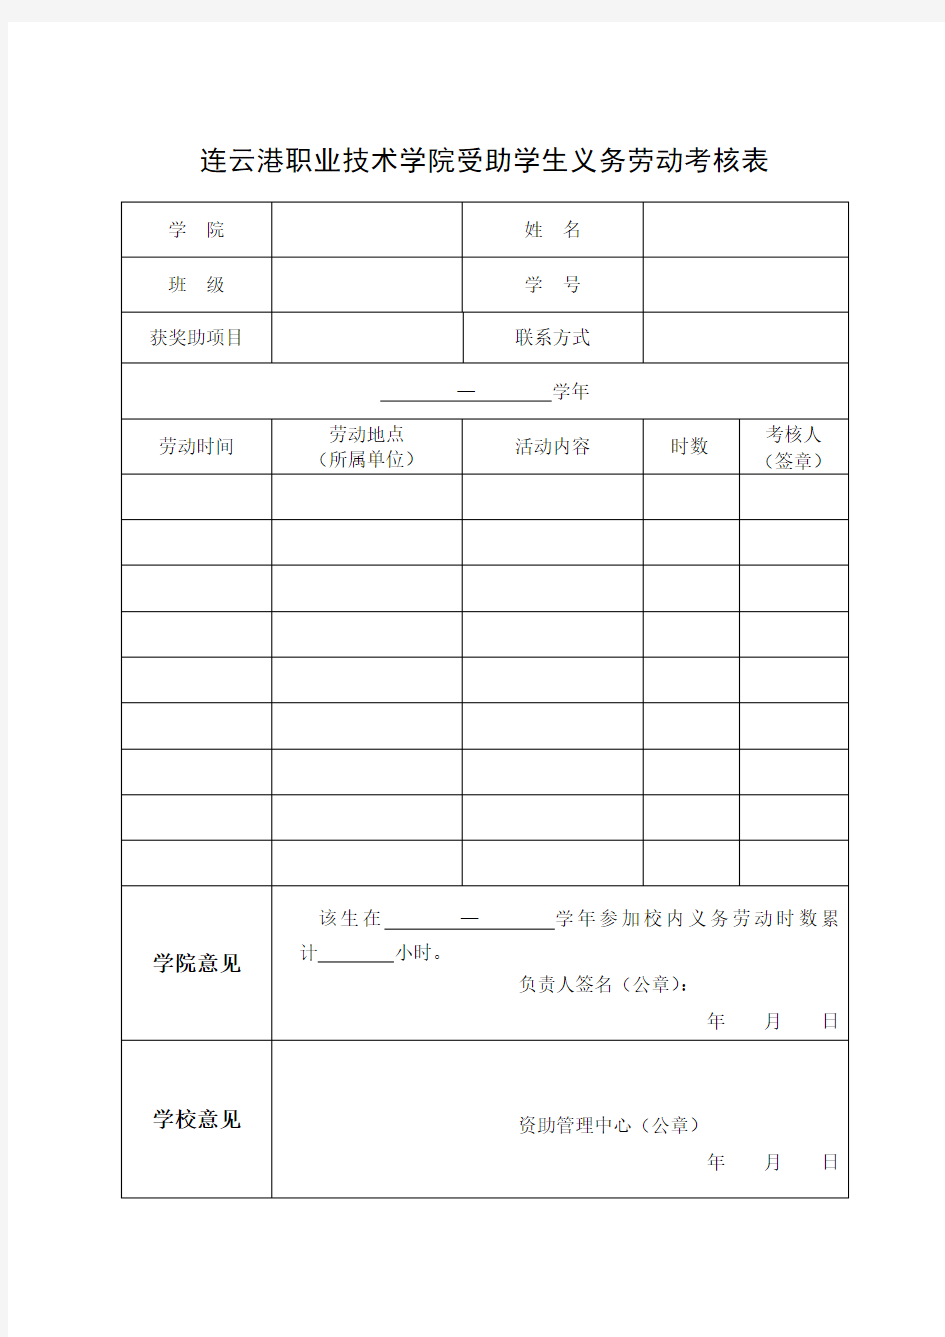 连云港职业技术学院受助学生义务劳动考核表